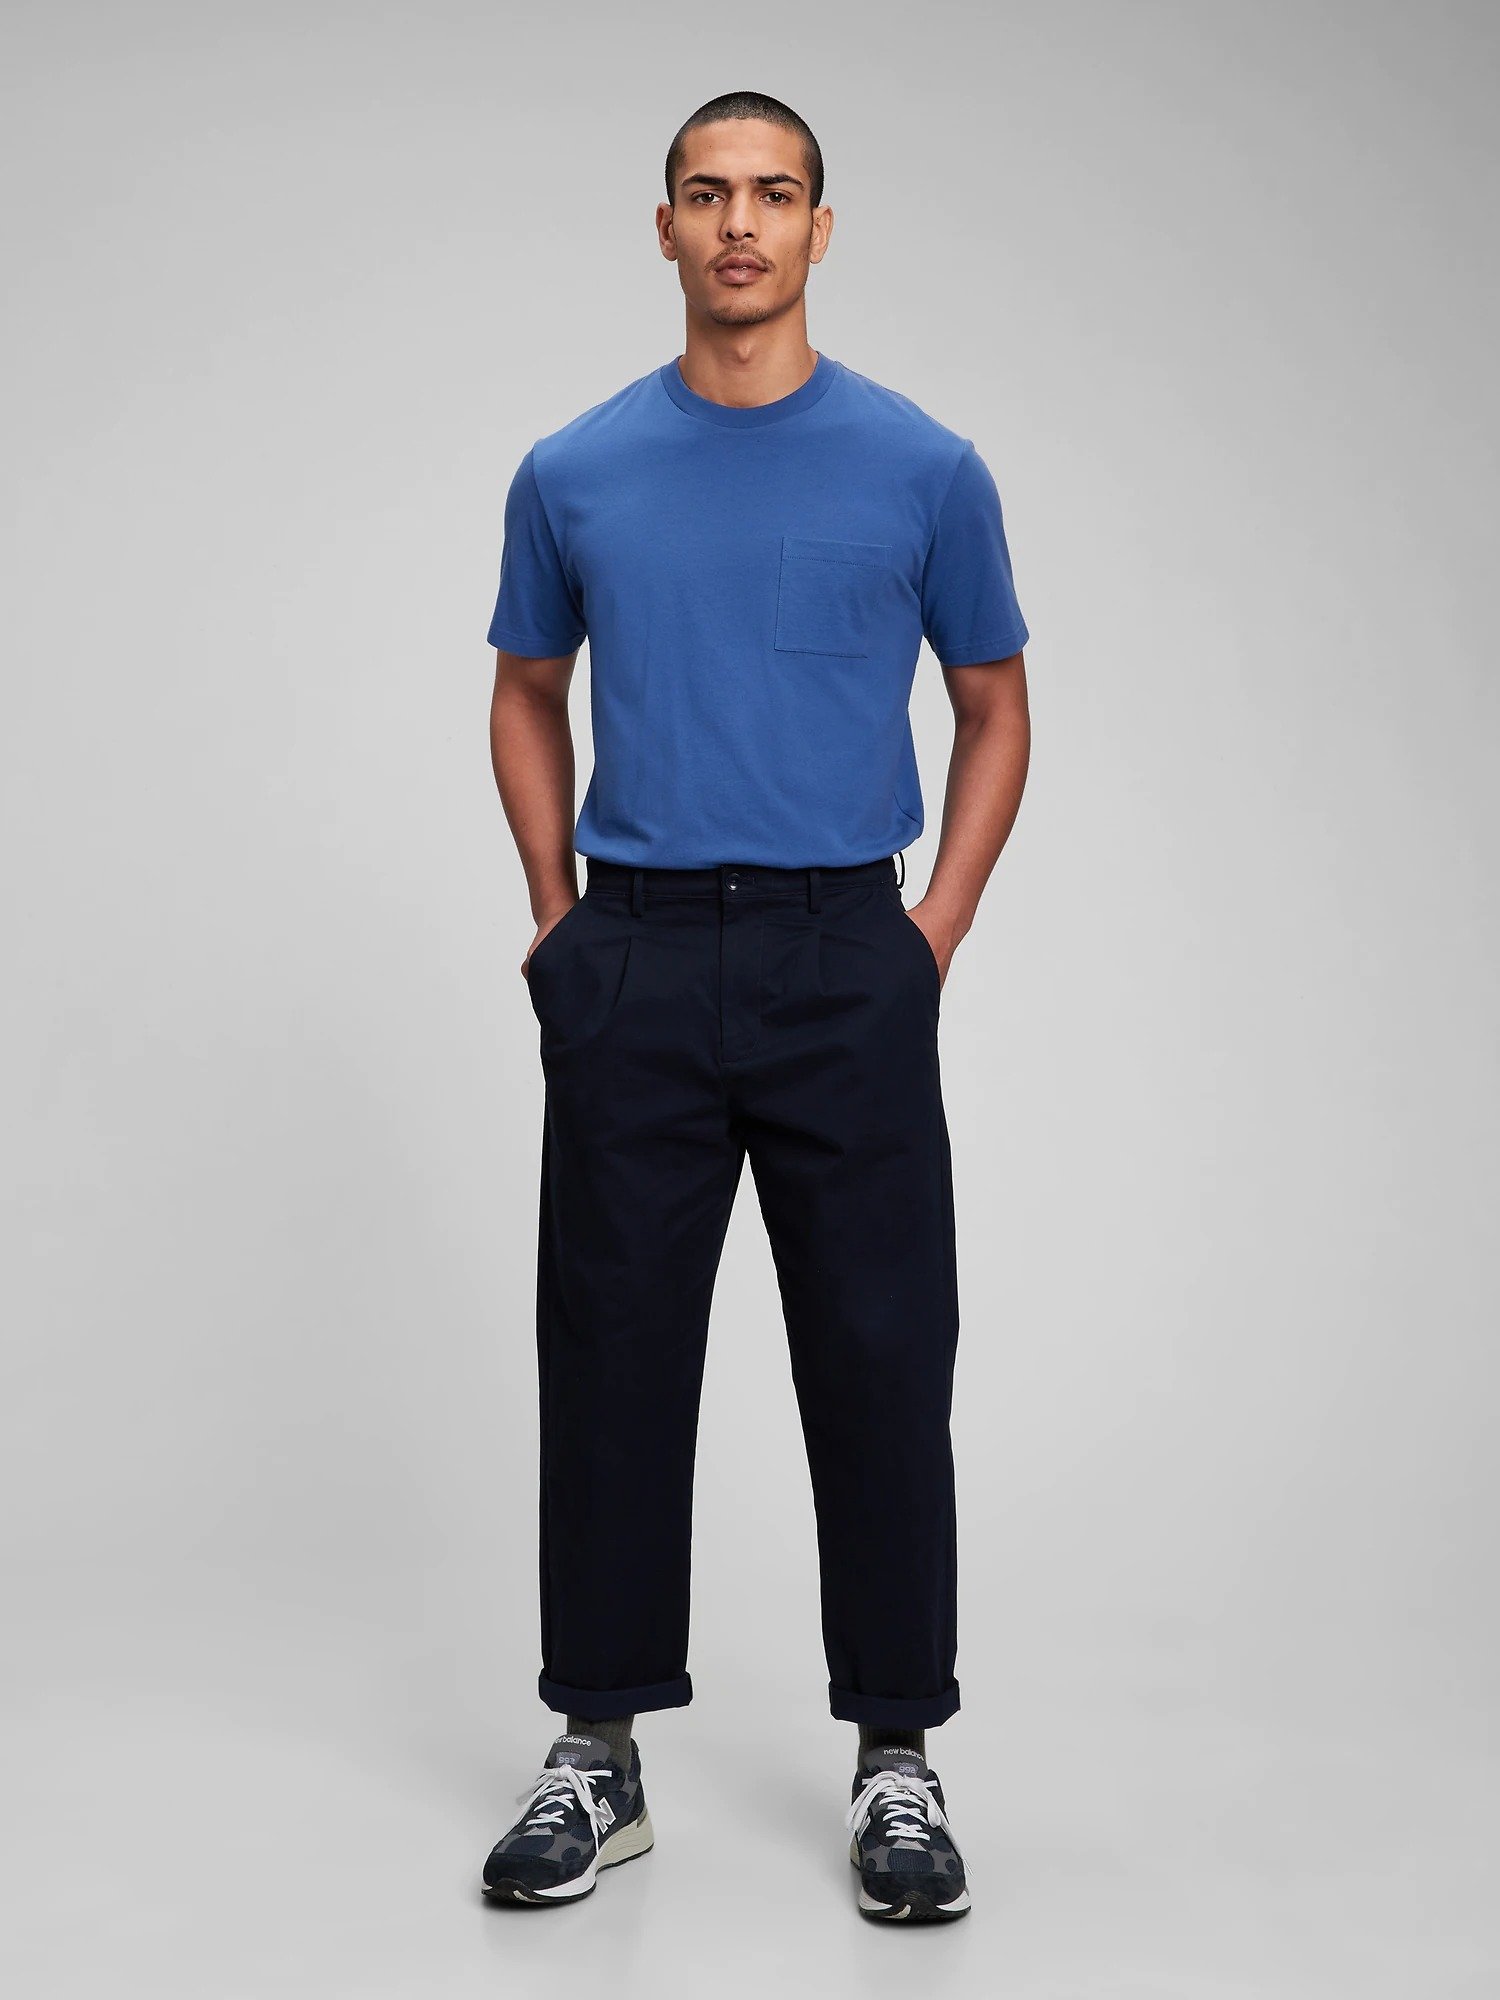 Relaxed Vintage Pleated Washwell™ Khaki Pantolon product image